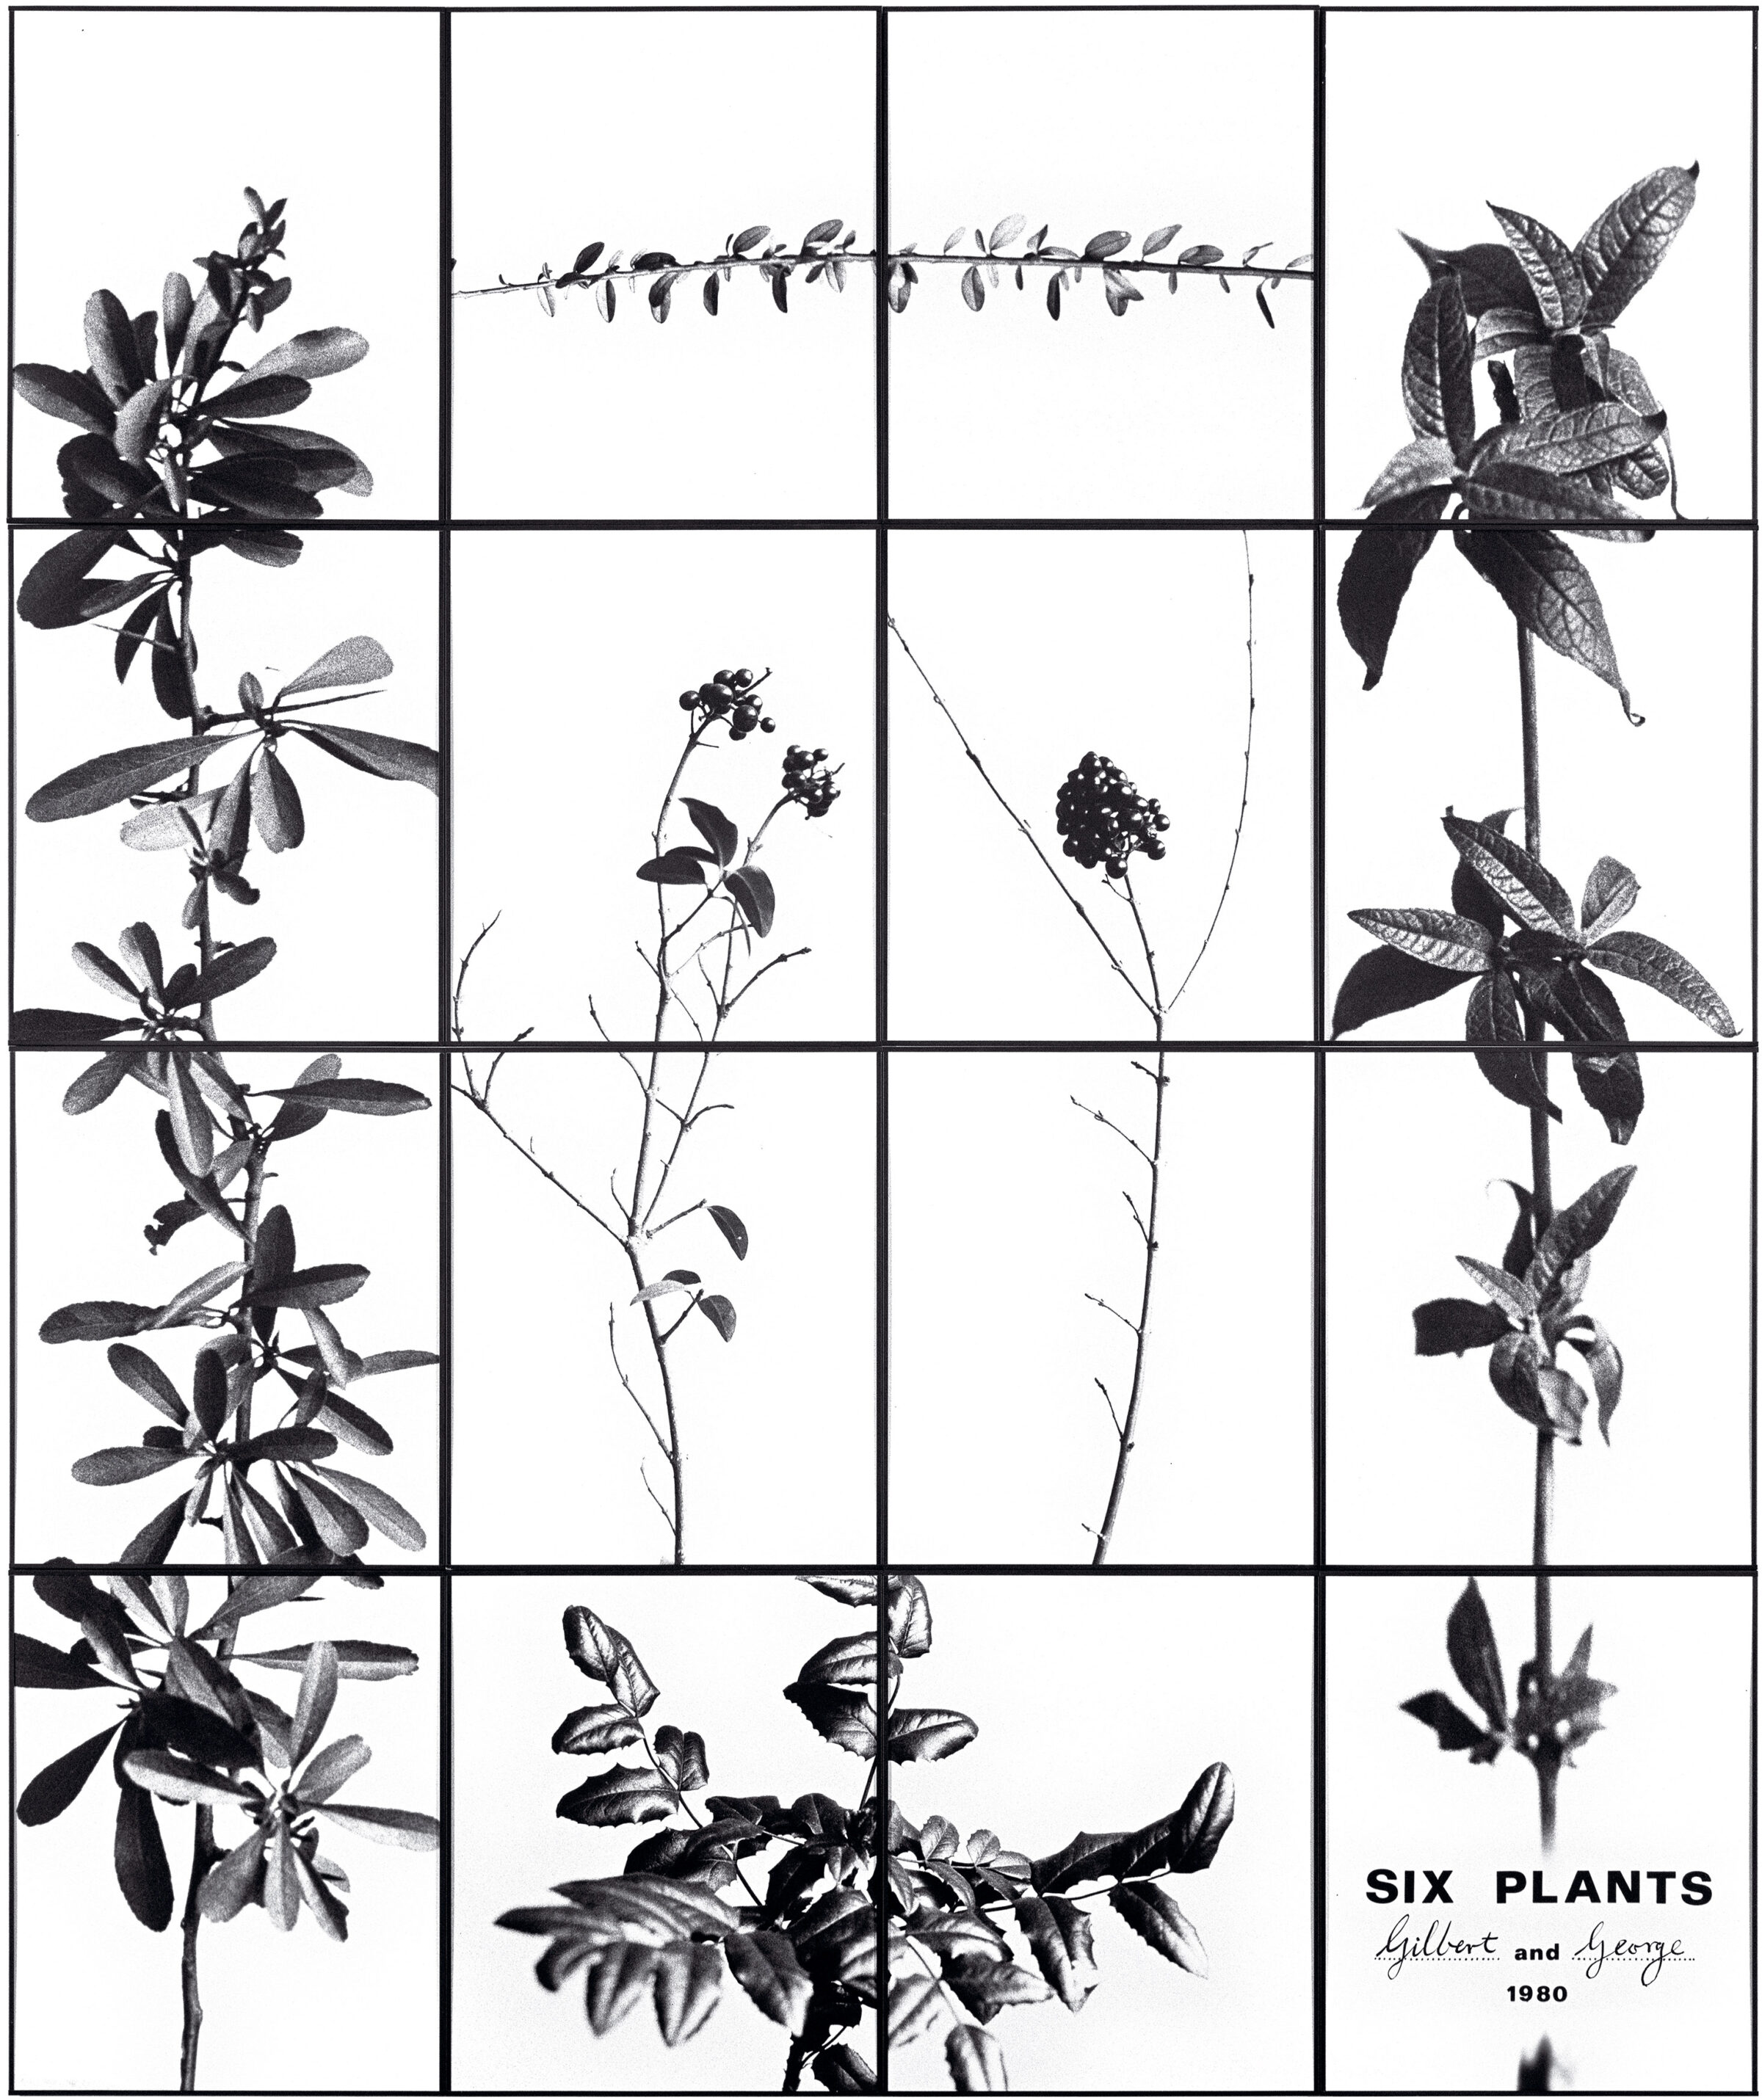 1980 SIX PLANTS